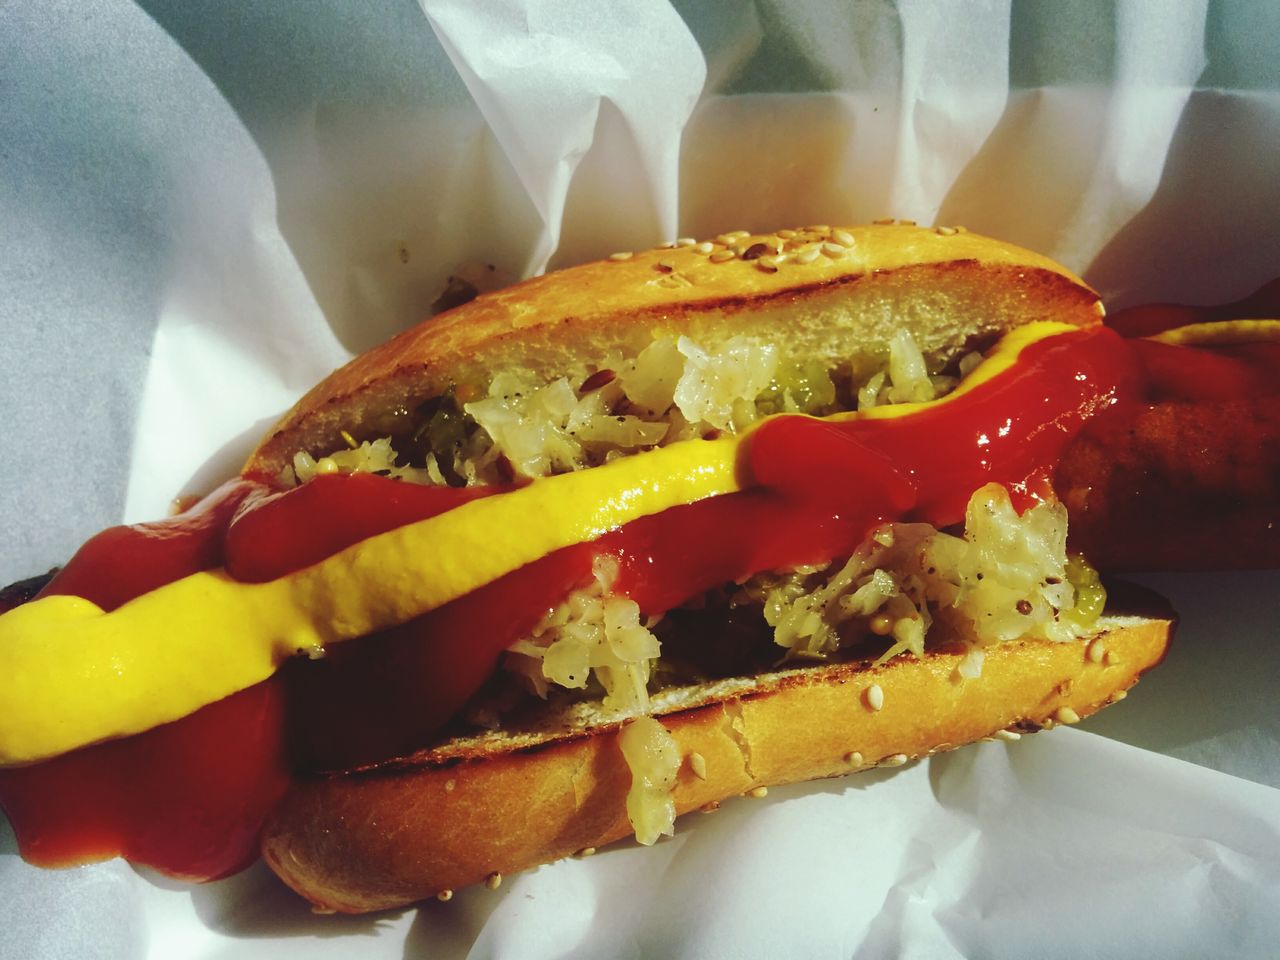 Close-up of hot dog with ketchup and mustard